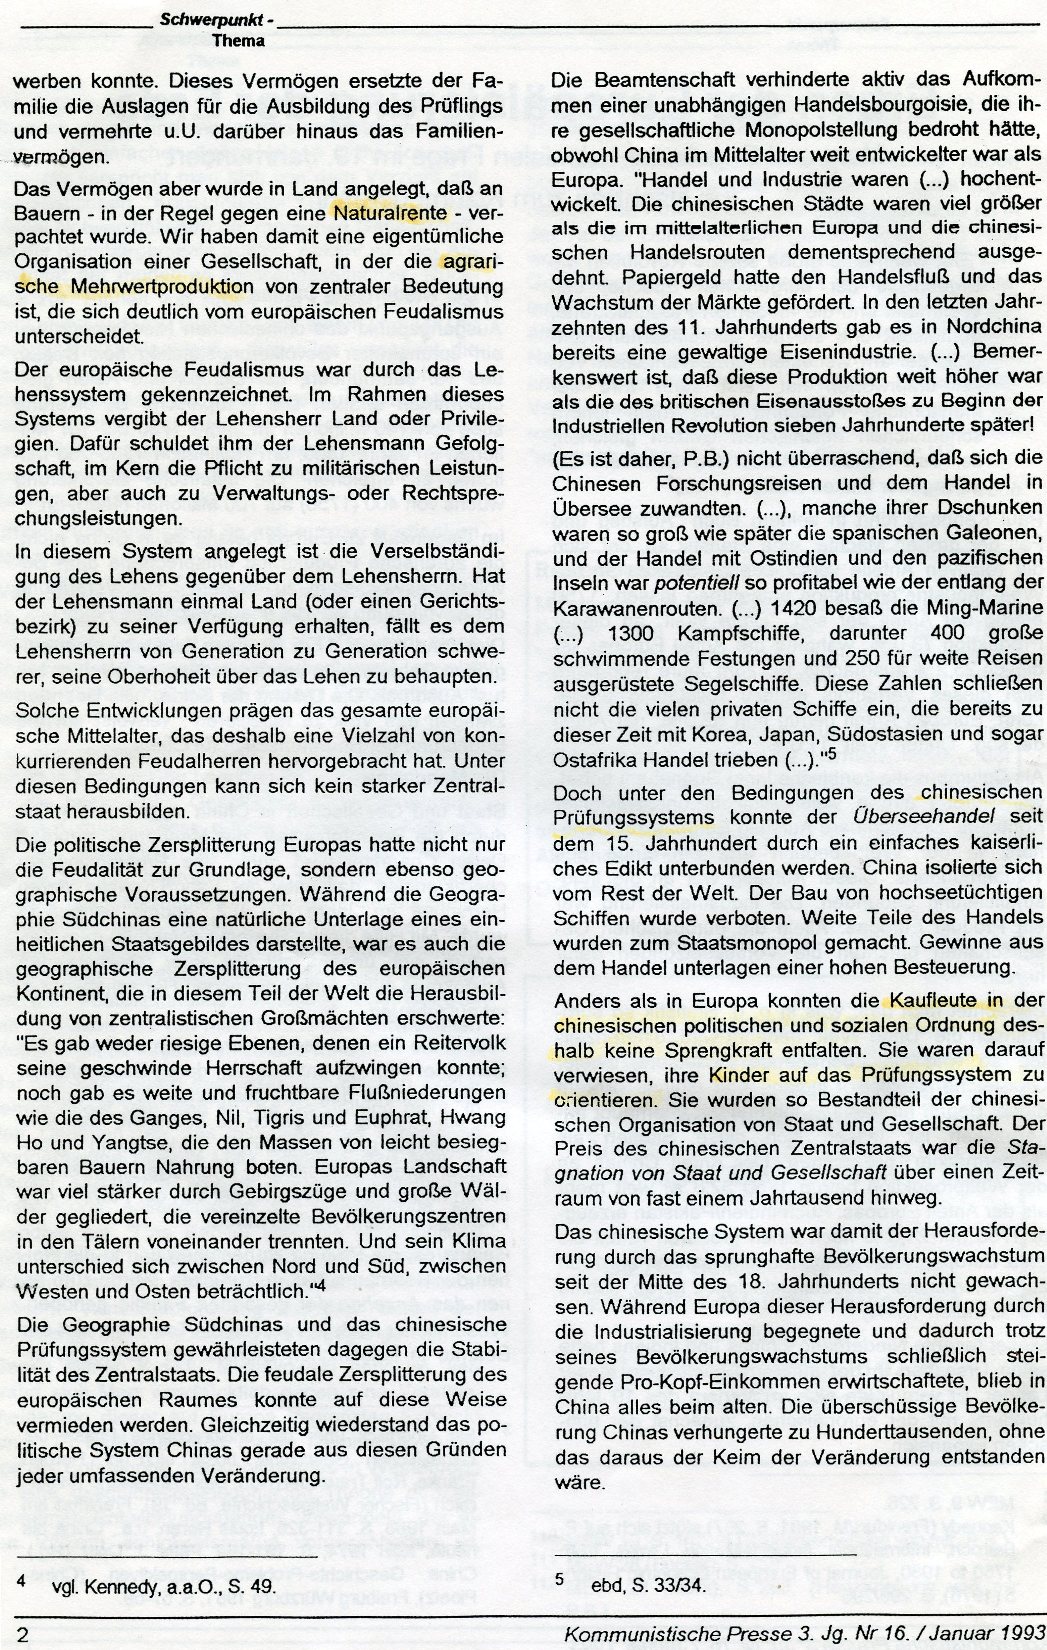 Gelsenkirchen_Kommunistische_Presse_1993_16_Beilage_002